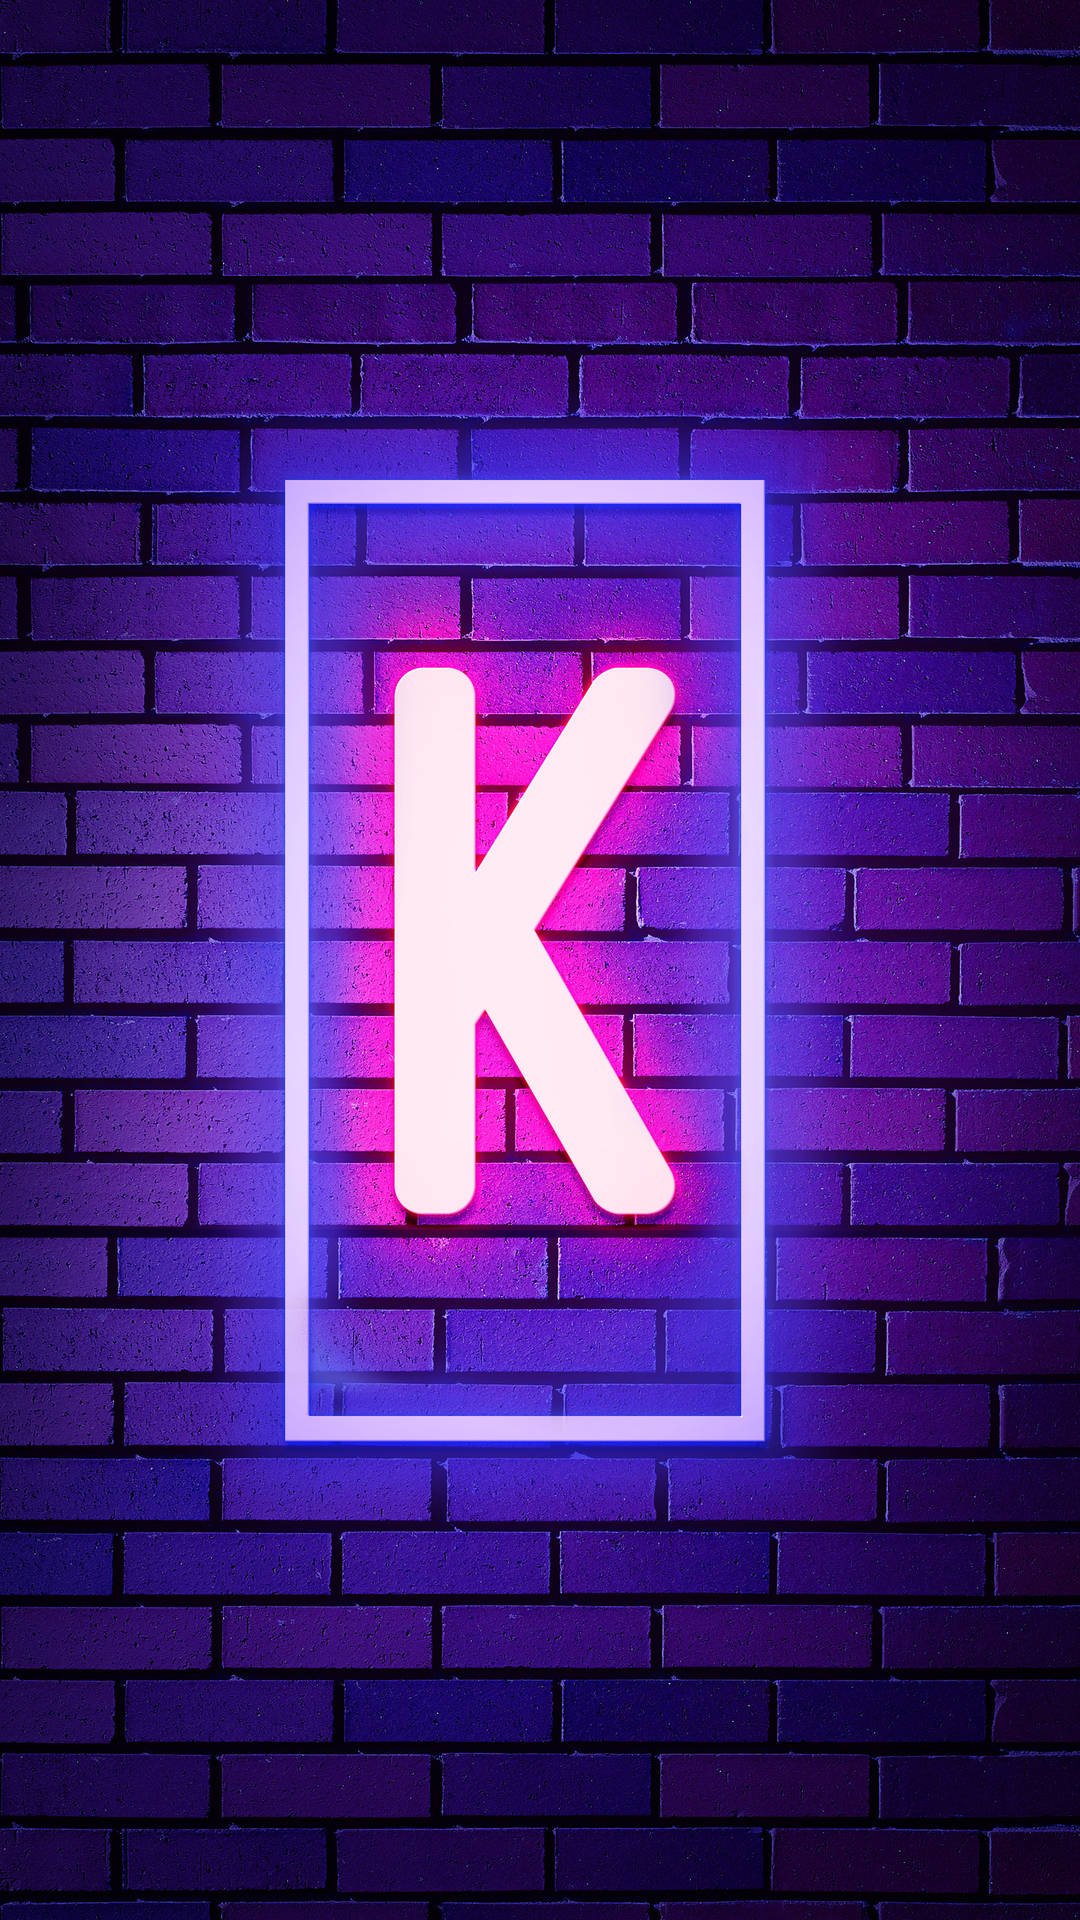 letter k in blue fire